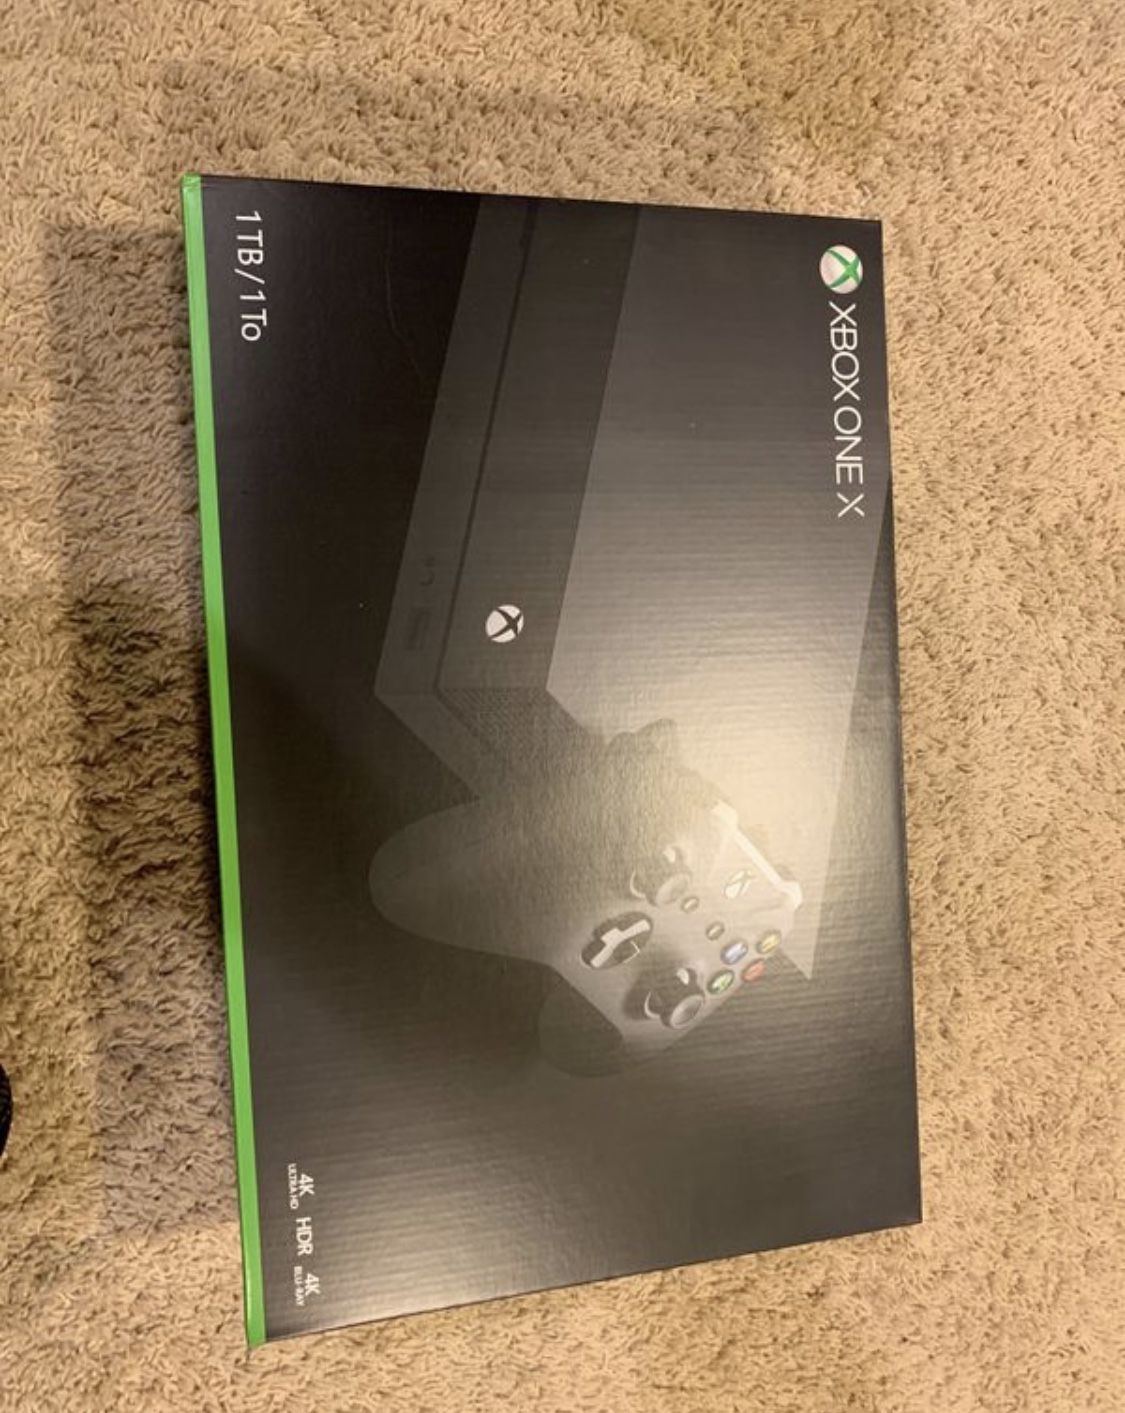 Xbox one X Brand New